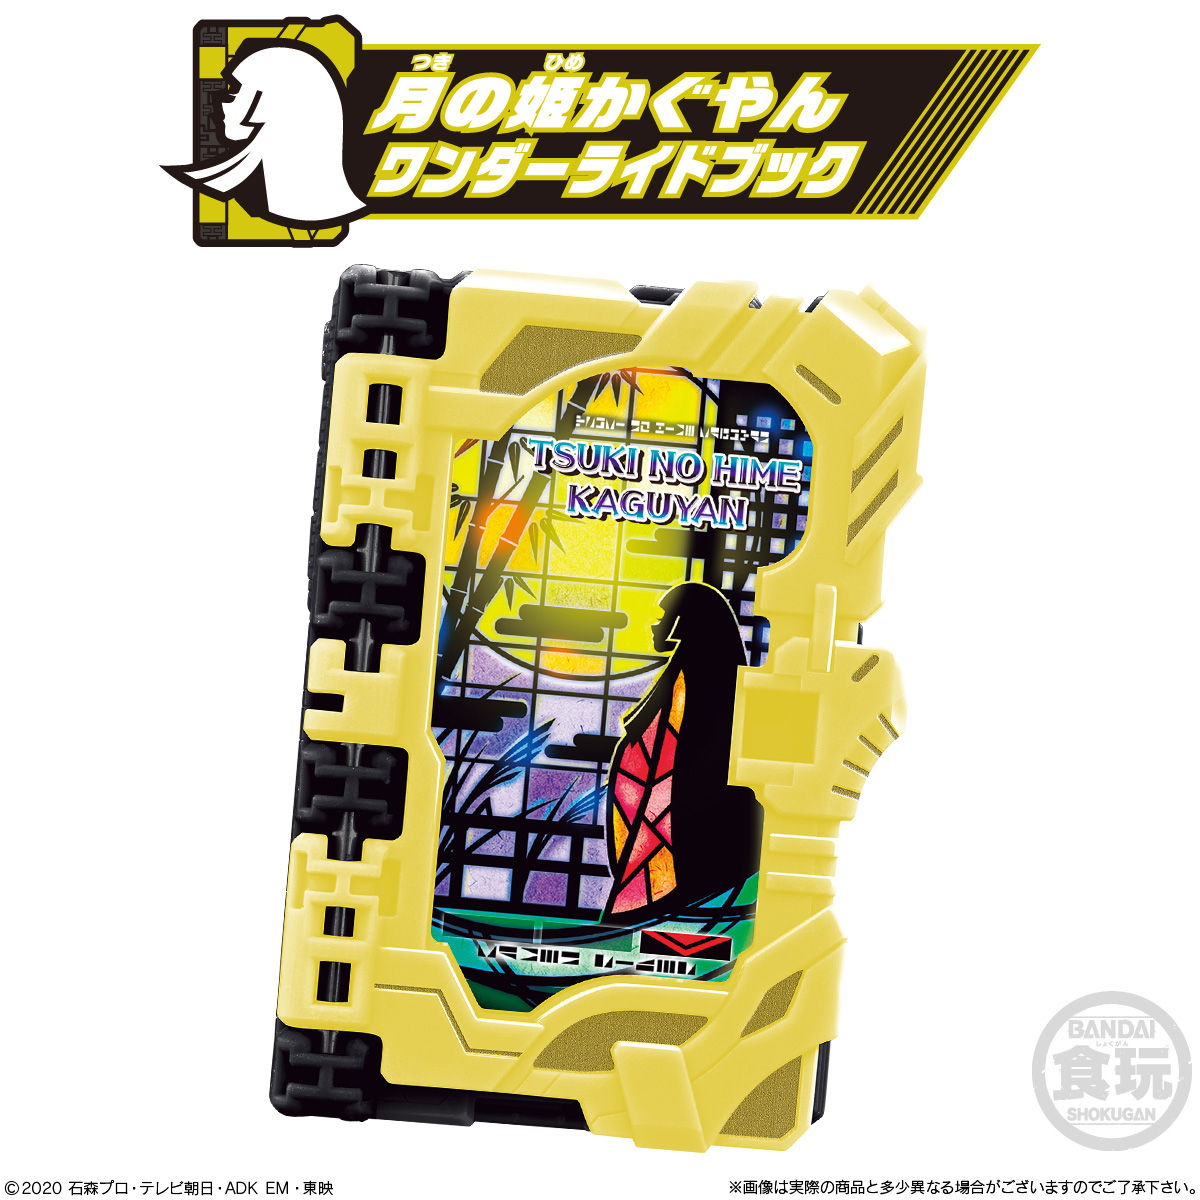 【食玩】仮面ライダーセイバー『コレクタブルワンダーライドブック SG08』8個入りBOX-006